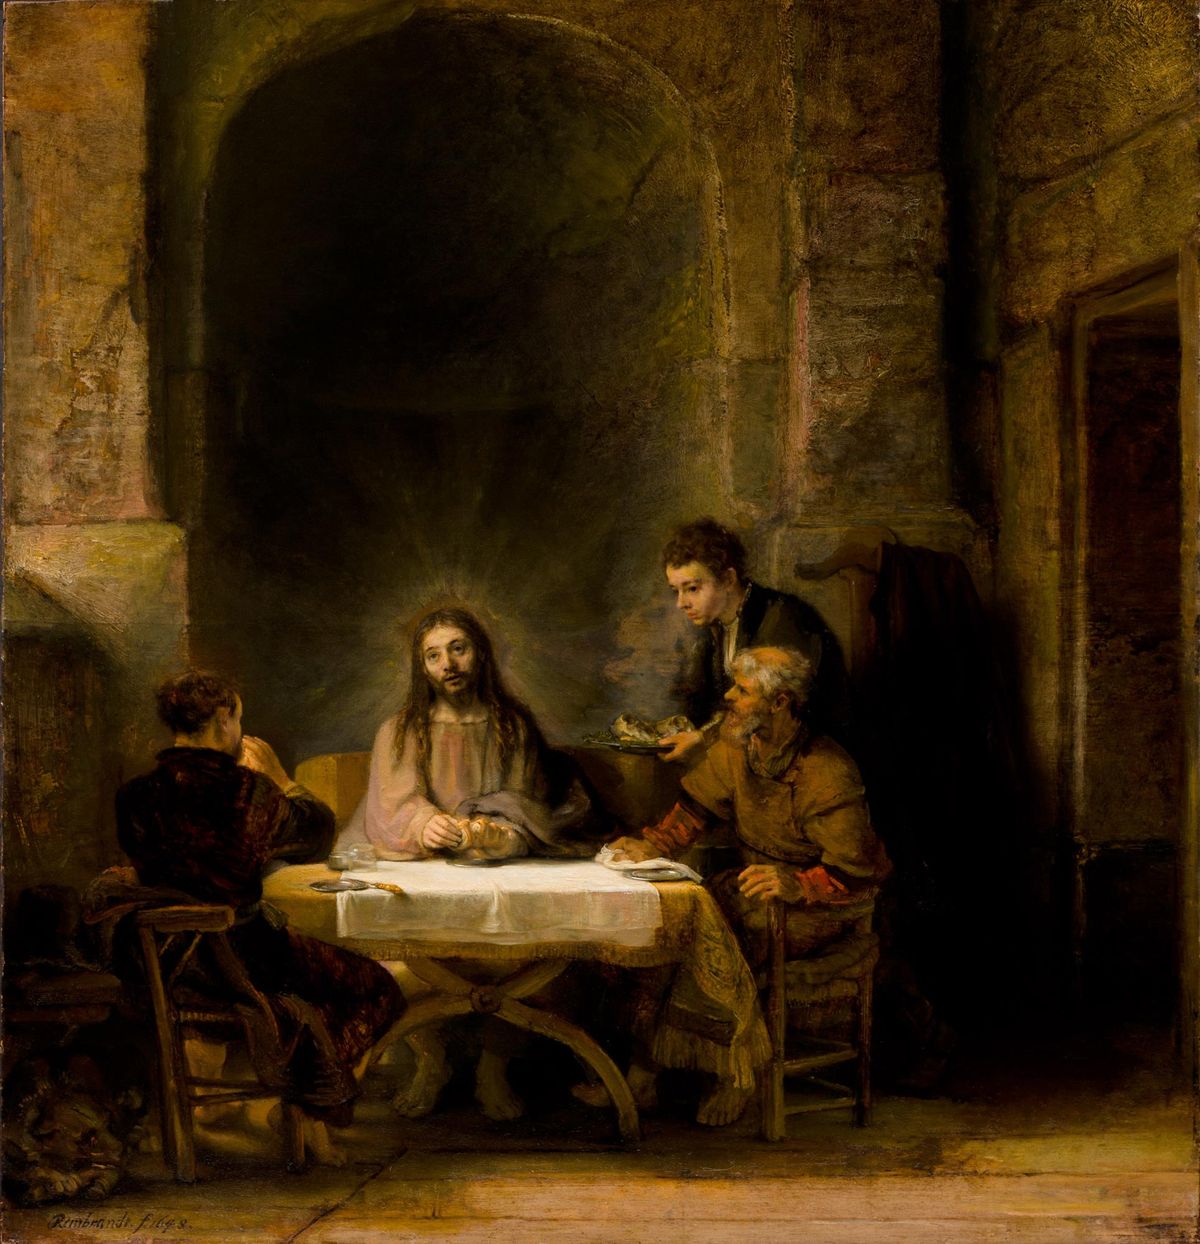 Rembrandt's Pilgrims at Emmaus has returned to the Musée du Louvre © 2010 Musée du Louvre / Philippe Fuzeau